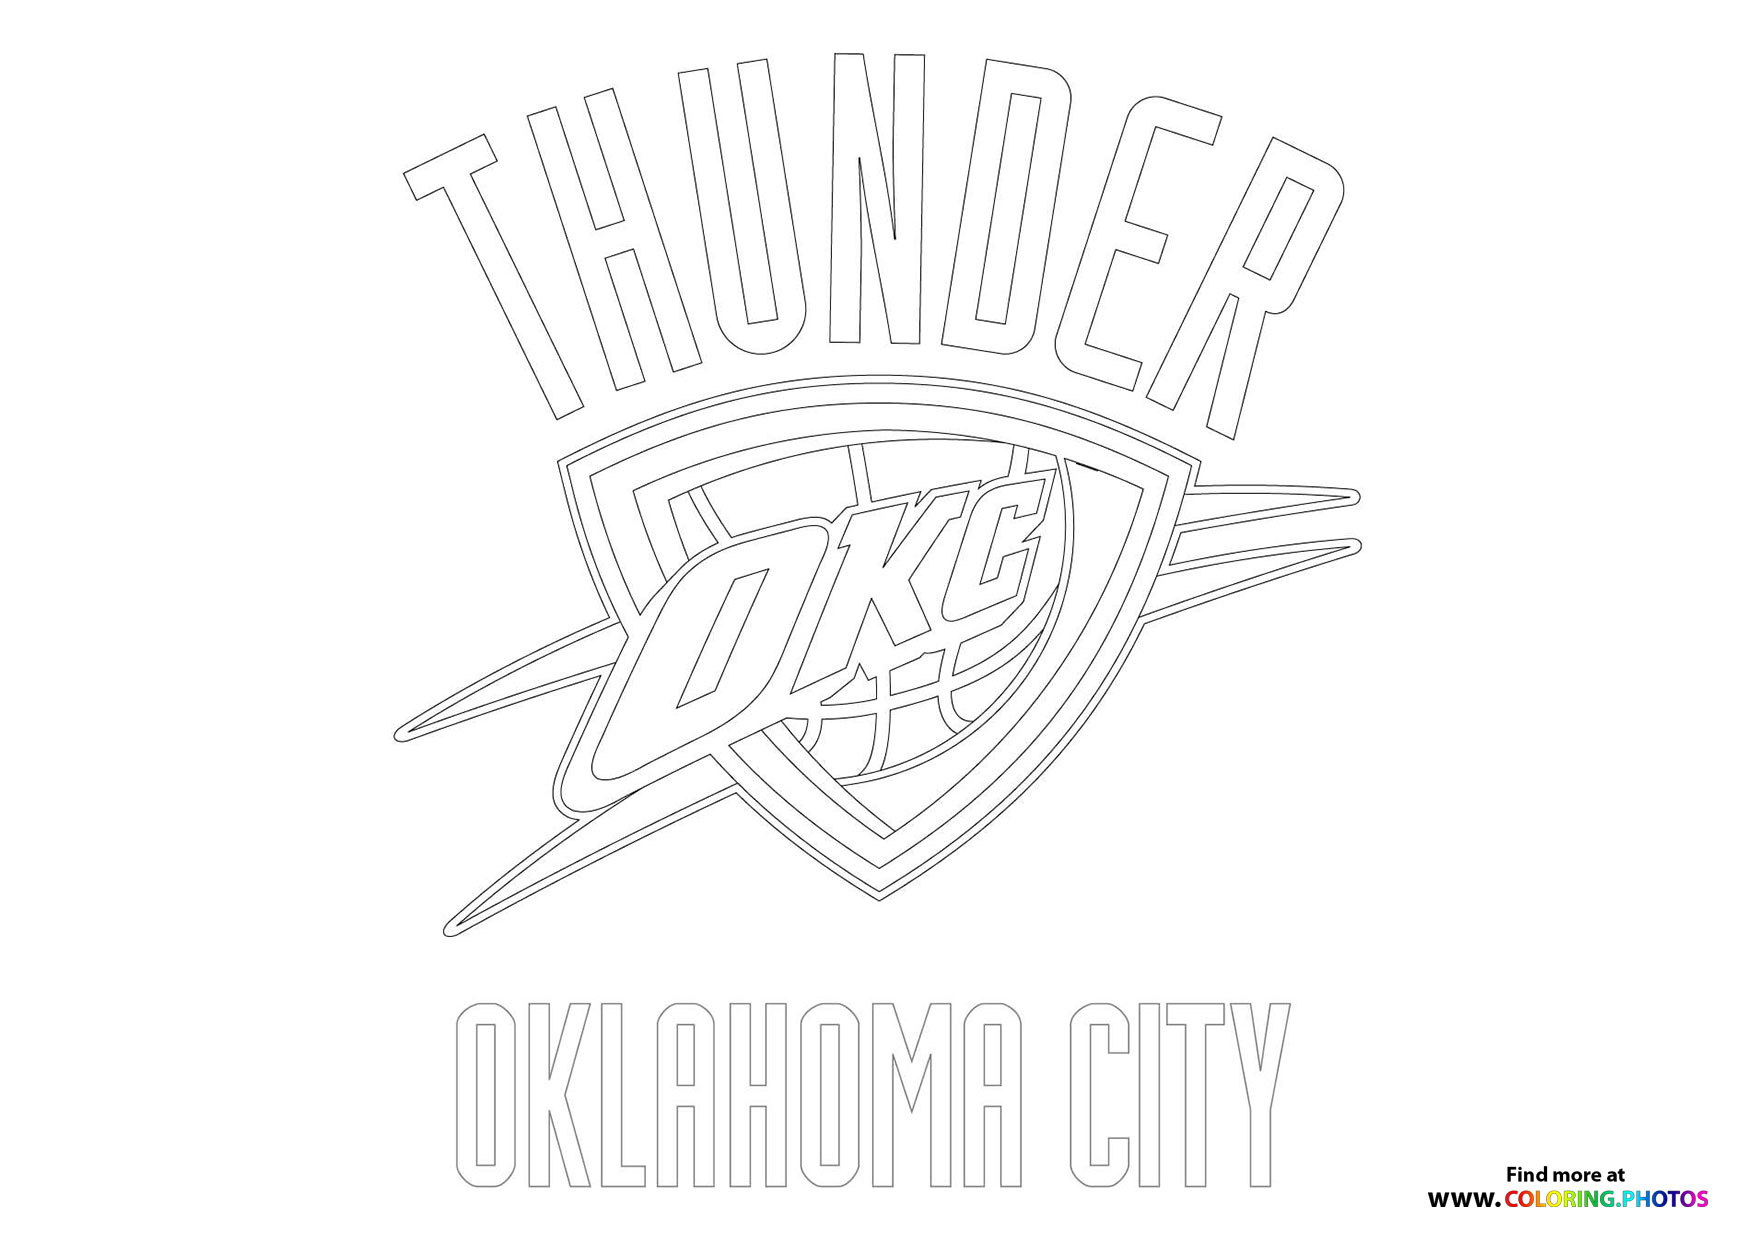 Oklahoma city thunder logo